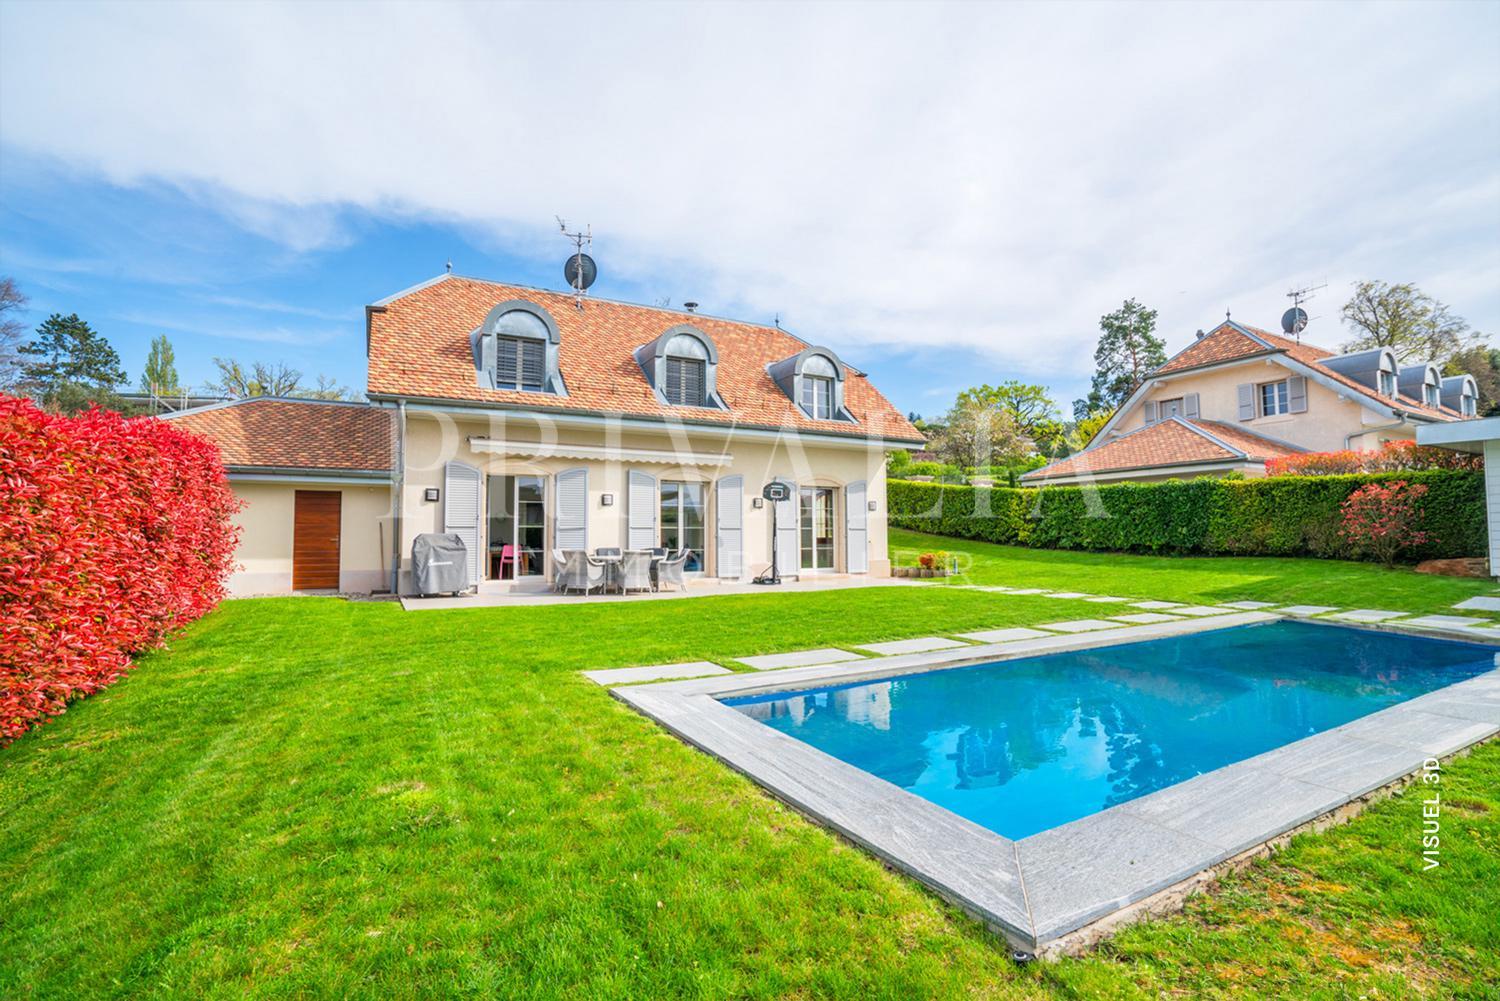 PrivaliaUnique : Magnifique villa avec piscine sur les hauteur de Cologny